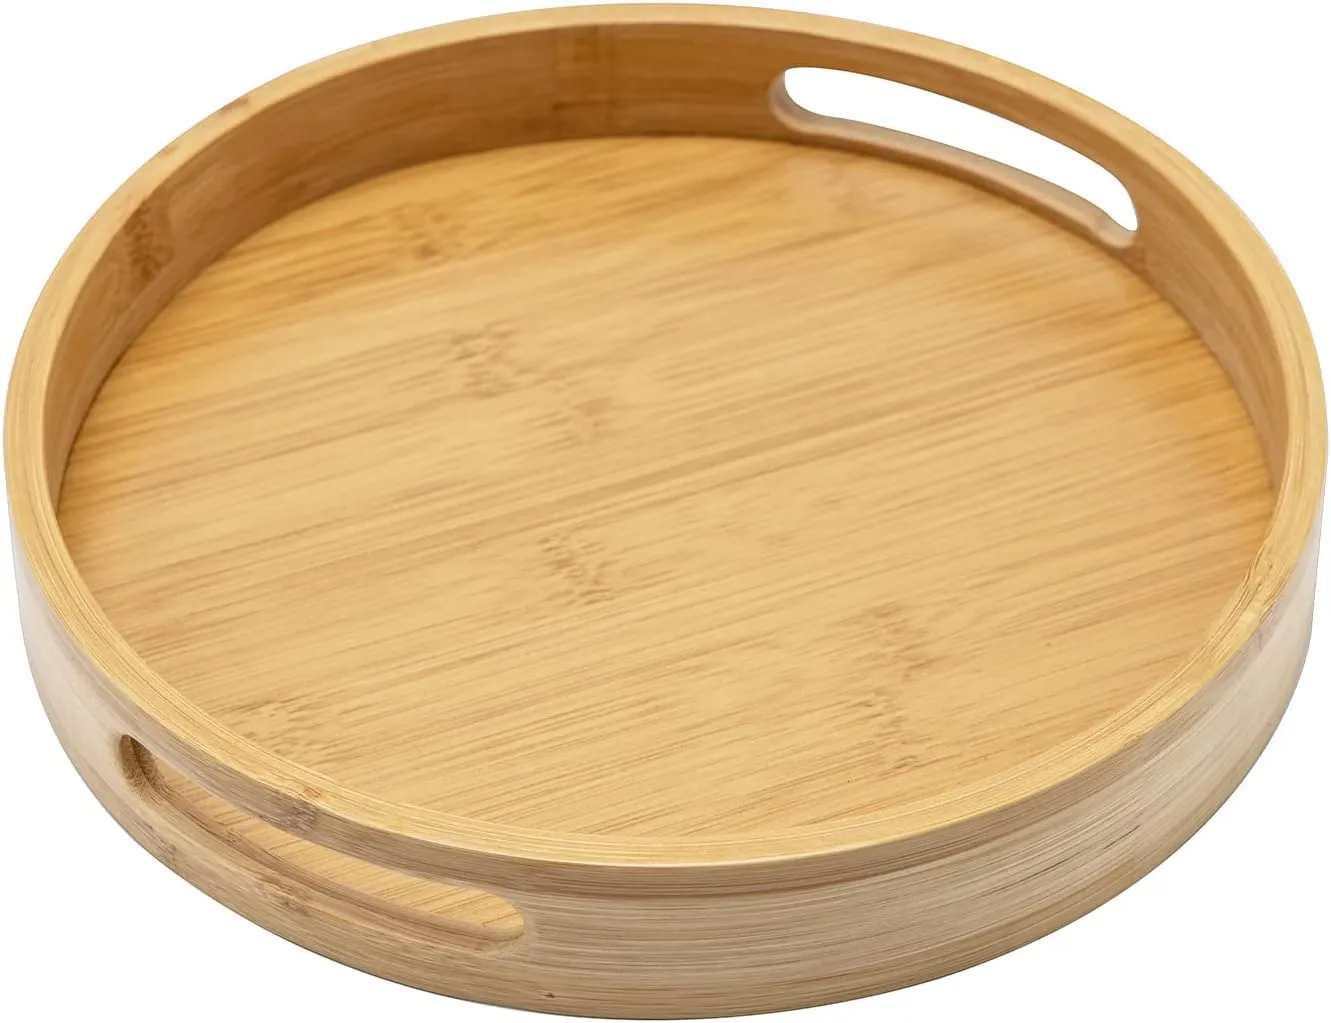 Japanse stijl ronde dienblad eten serveerplaat bamboe snack desert bord theeboard voor thuis